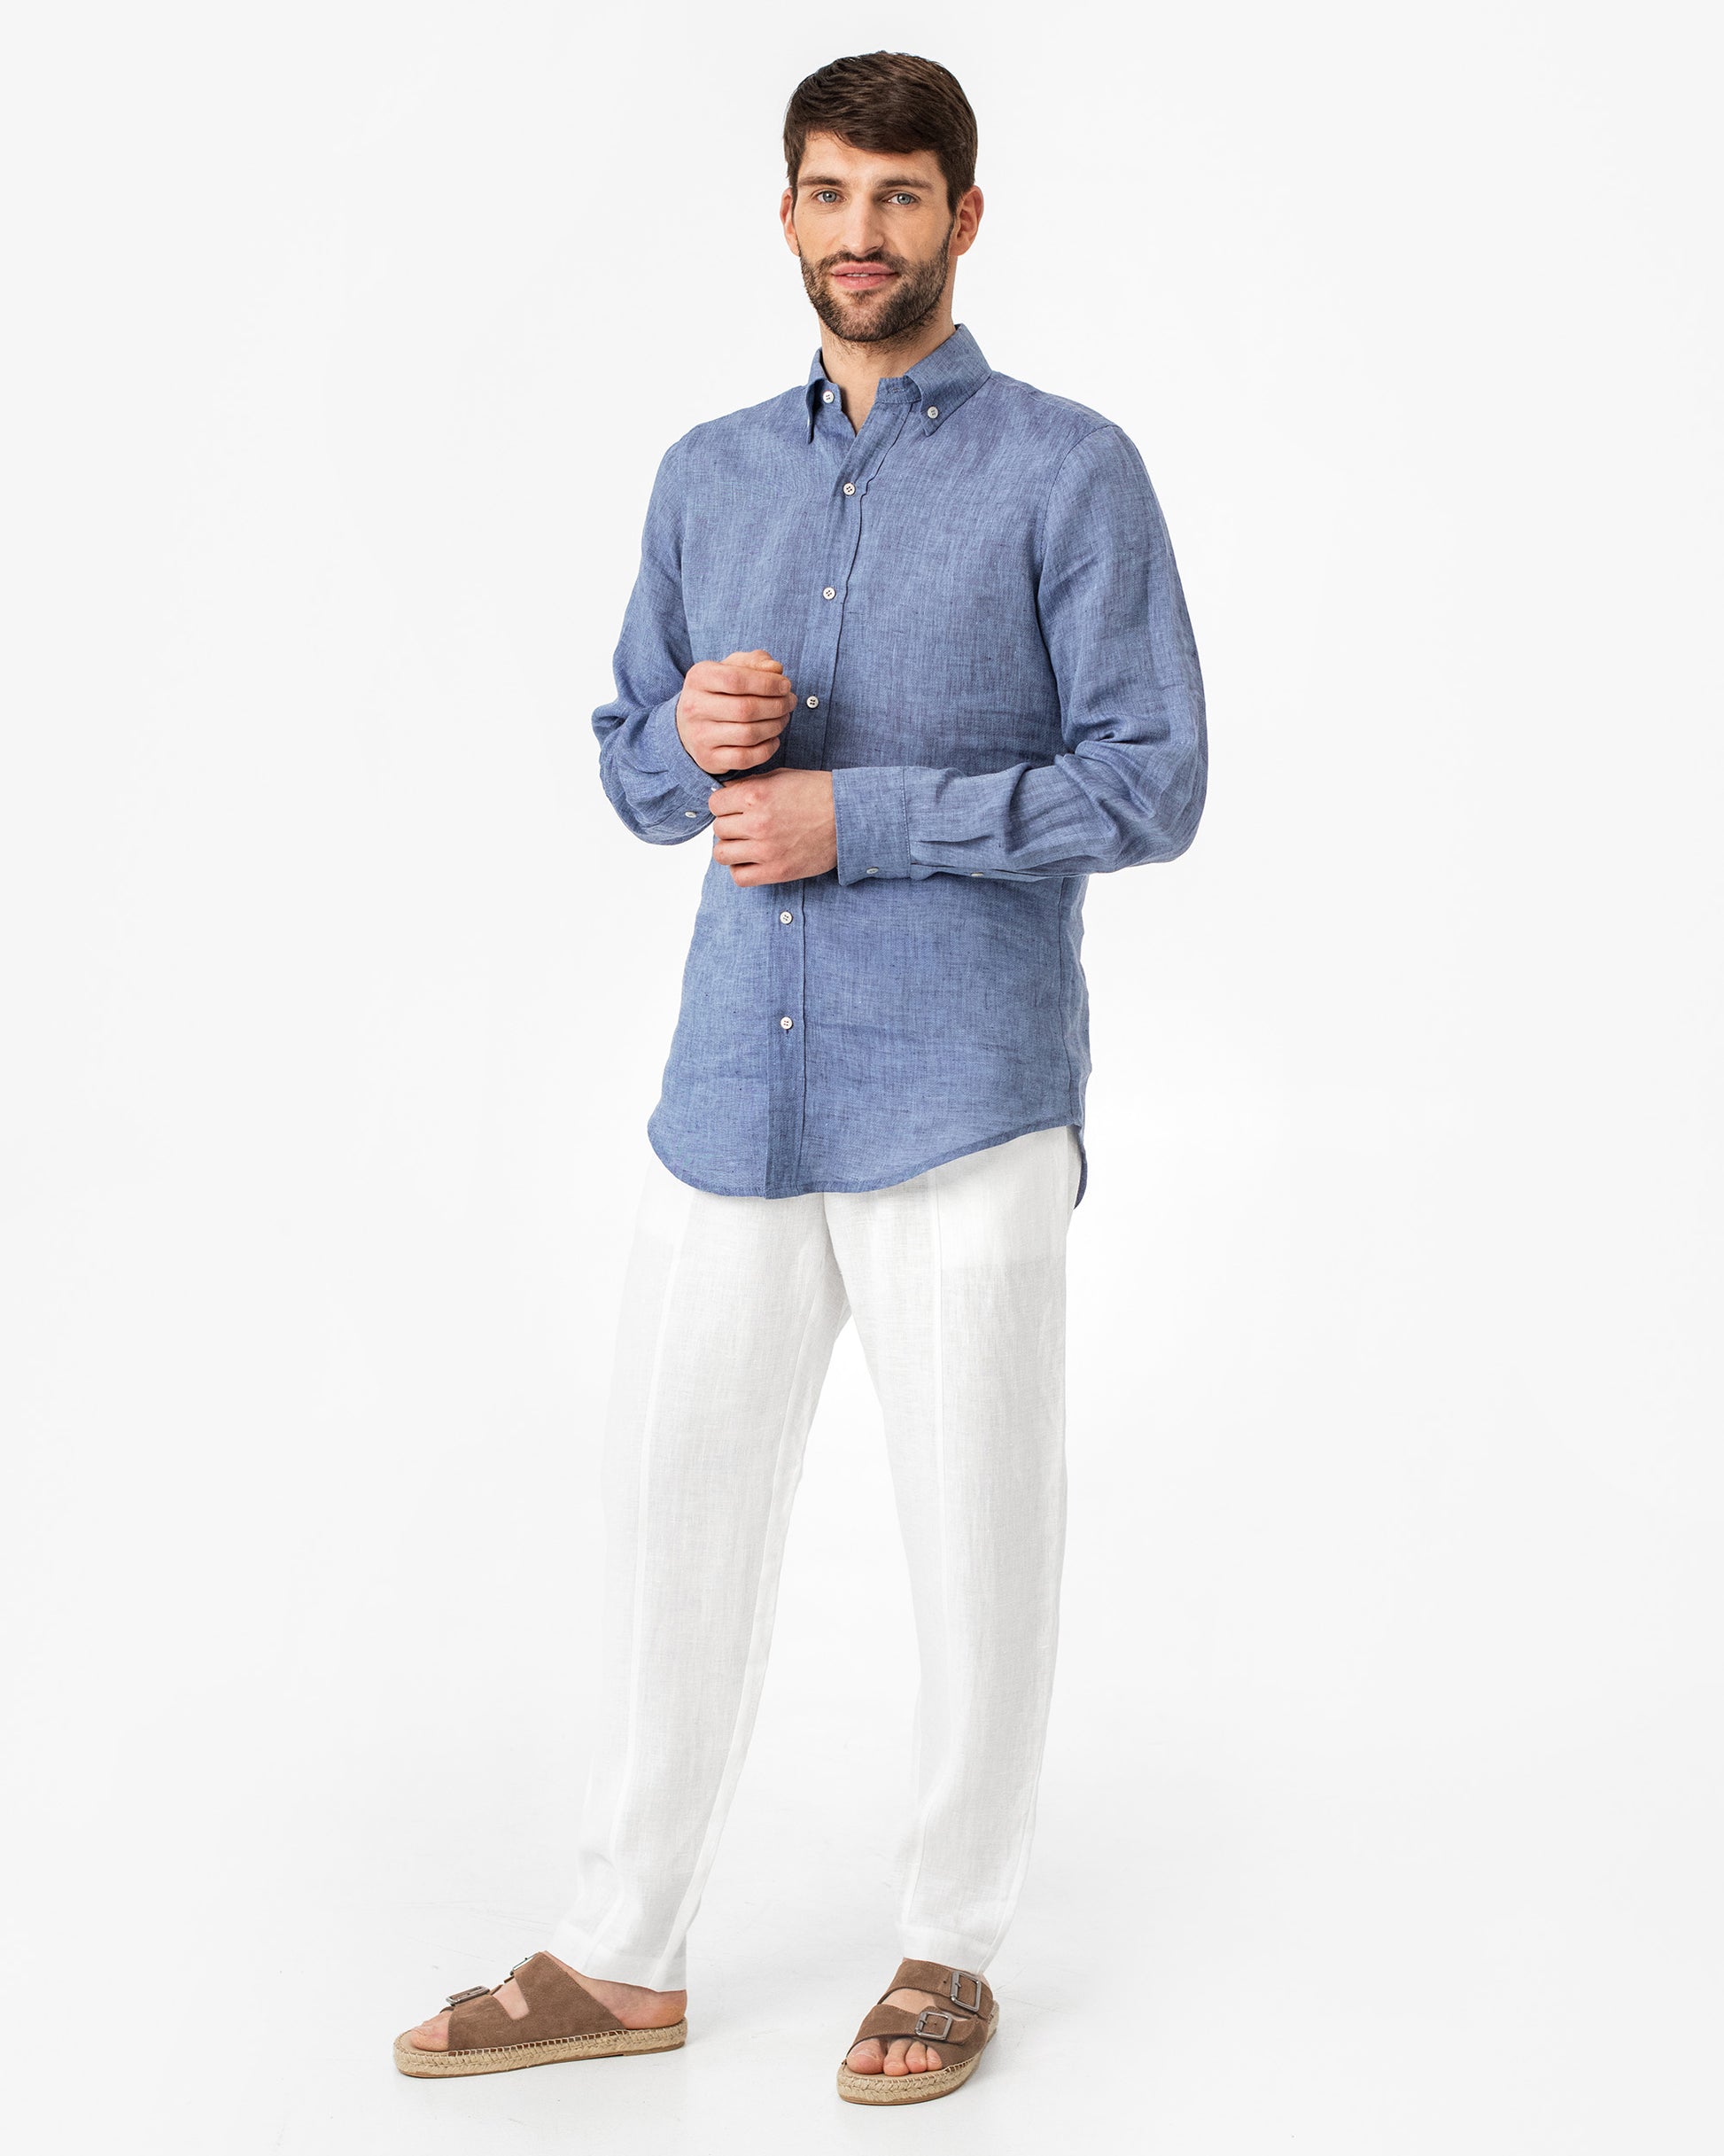 Men's classic linen shirt WENGEN in Denim chambray - MagicLinen